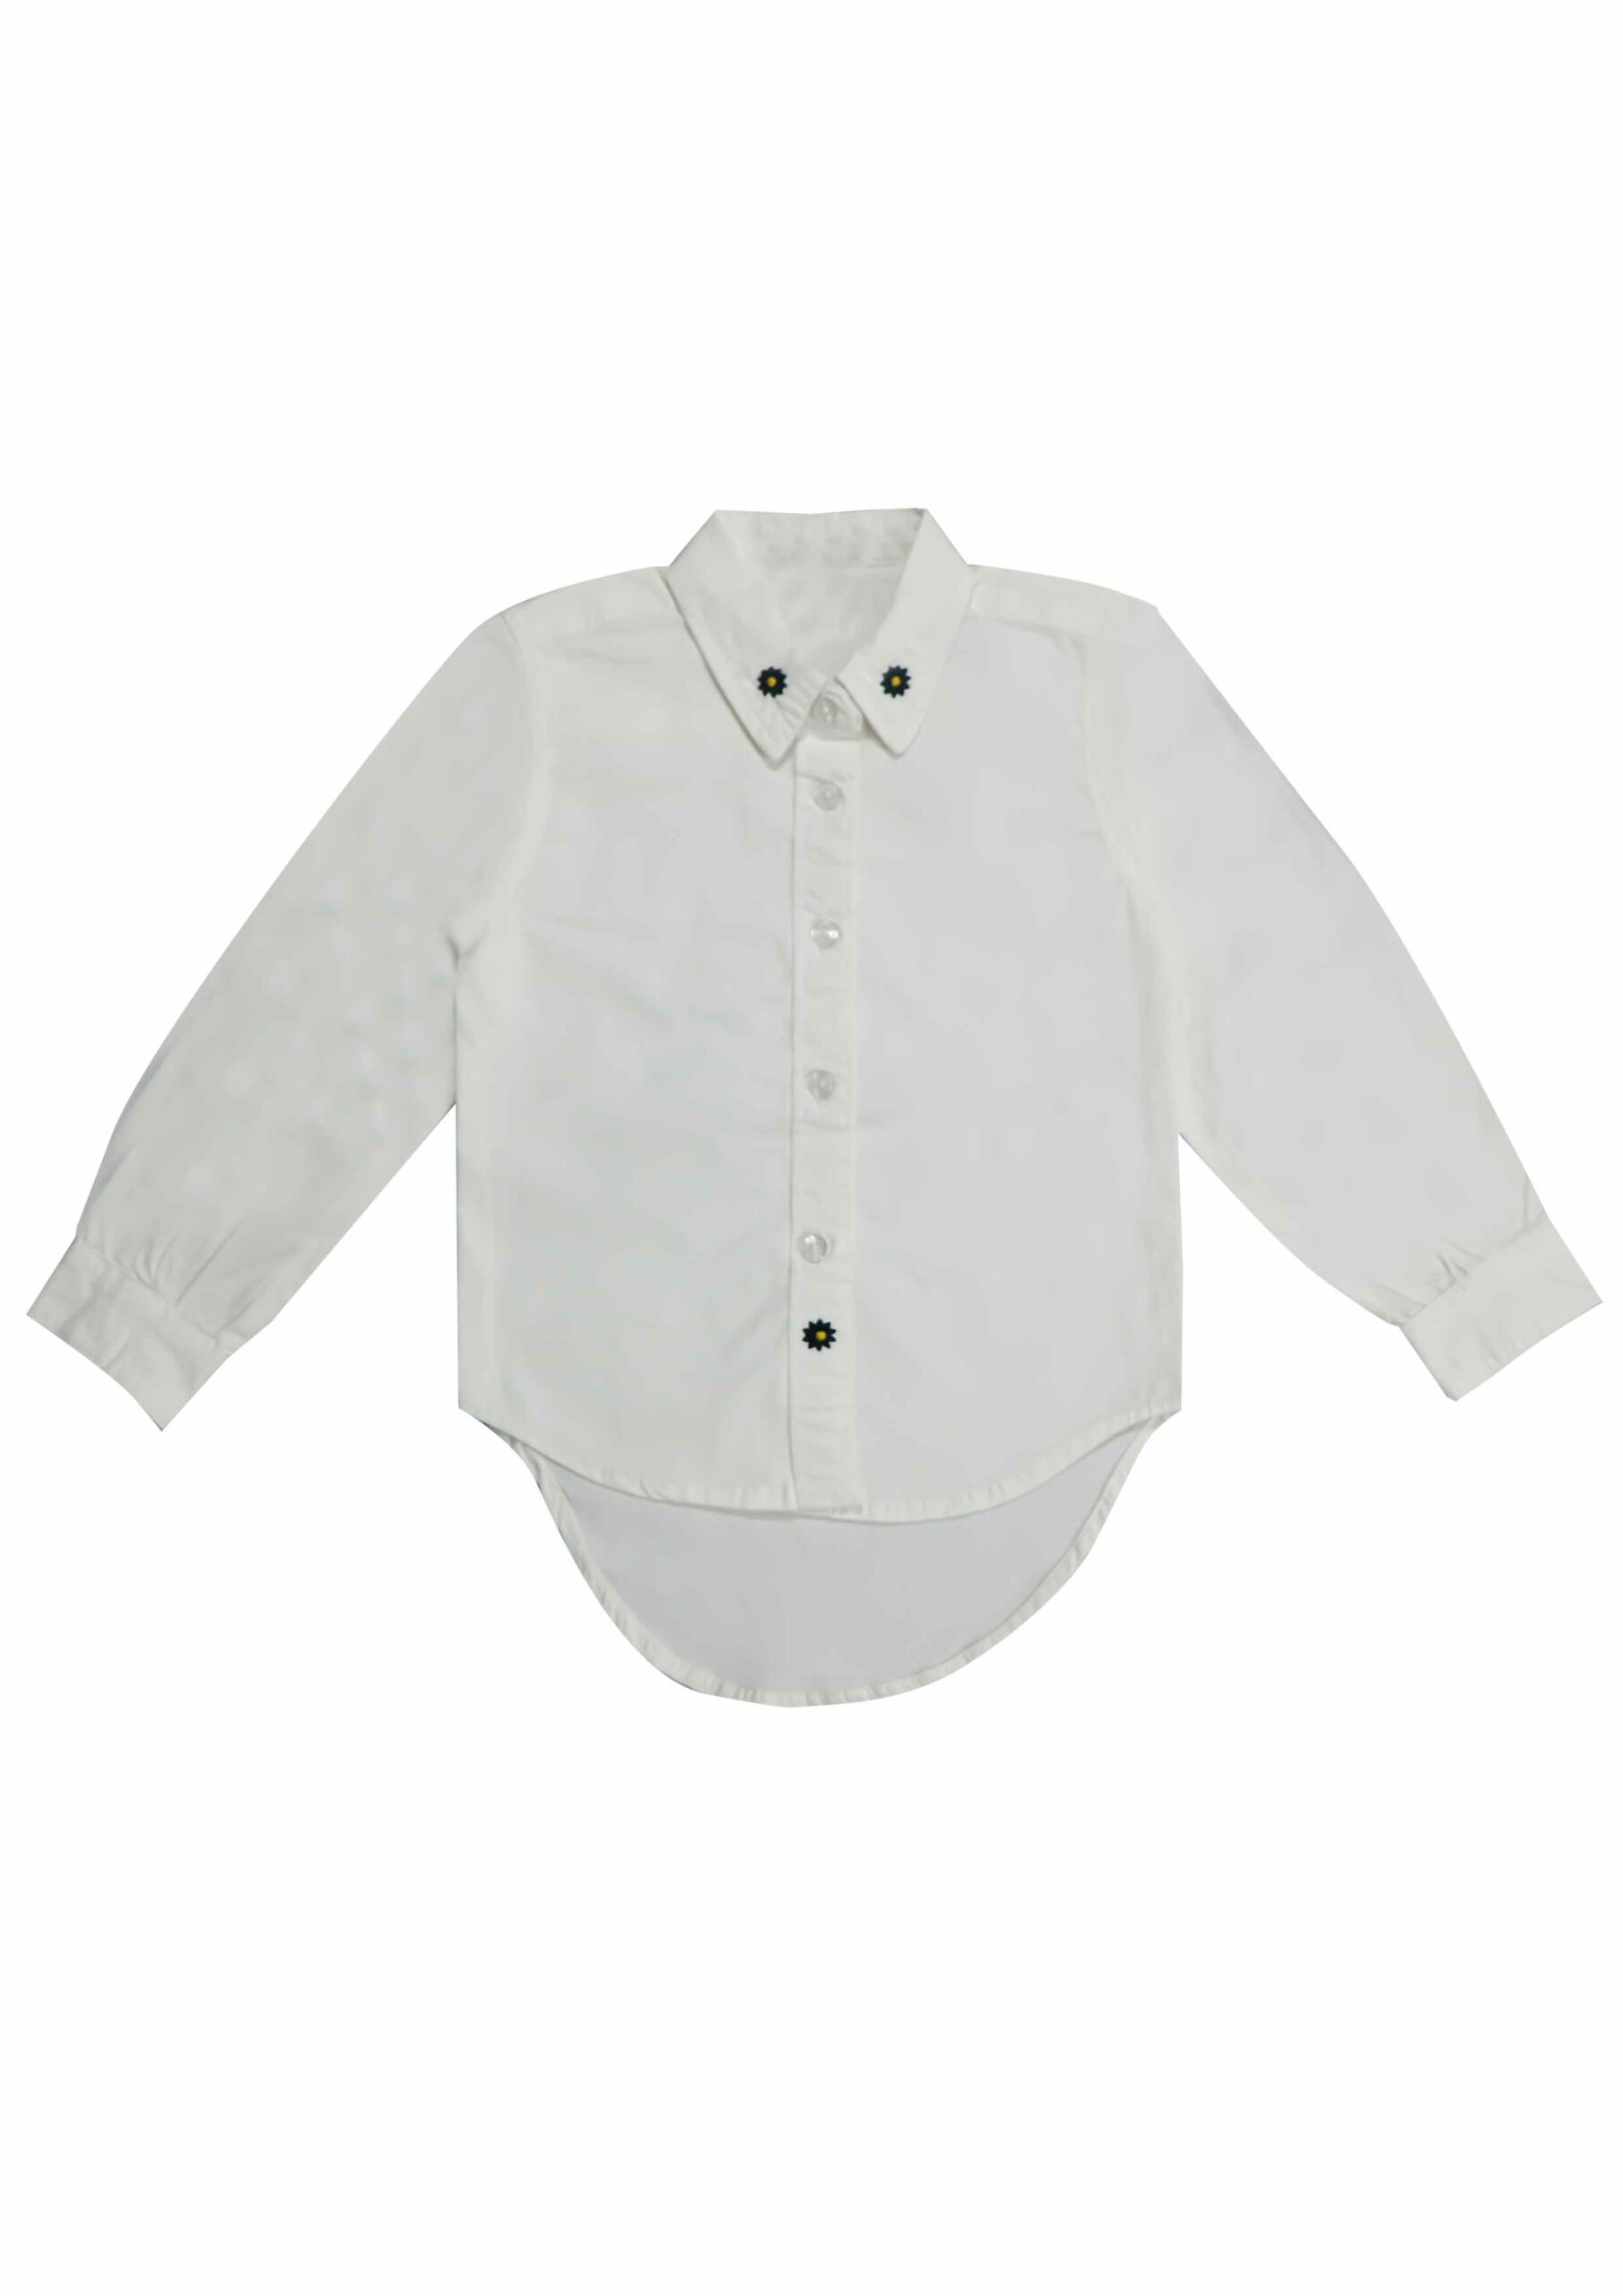 Girls Shirt - Artisan Outfitters Ltd